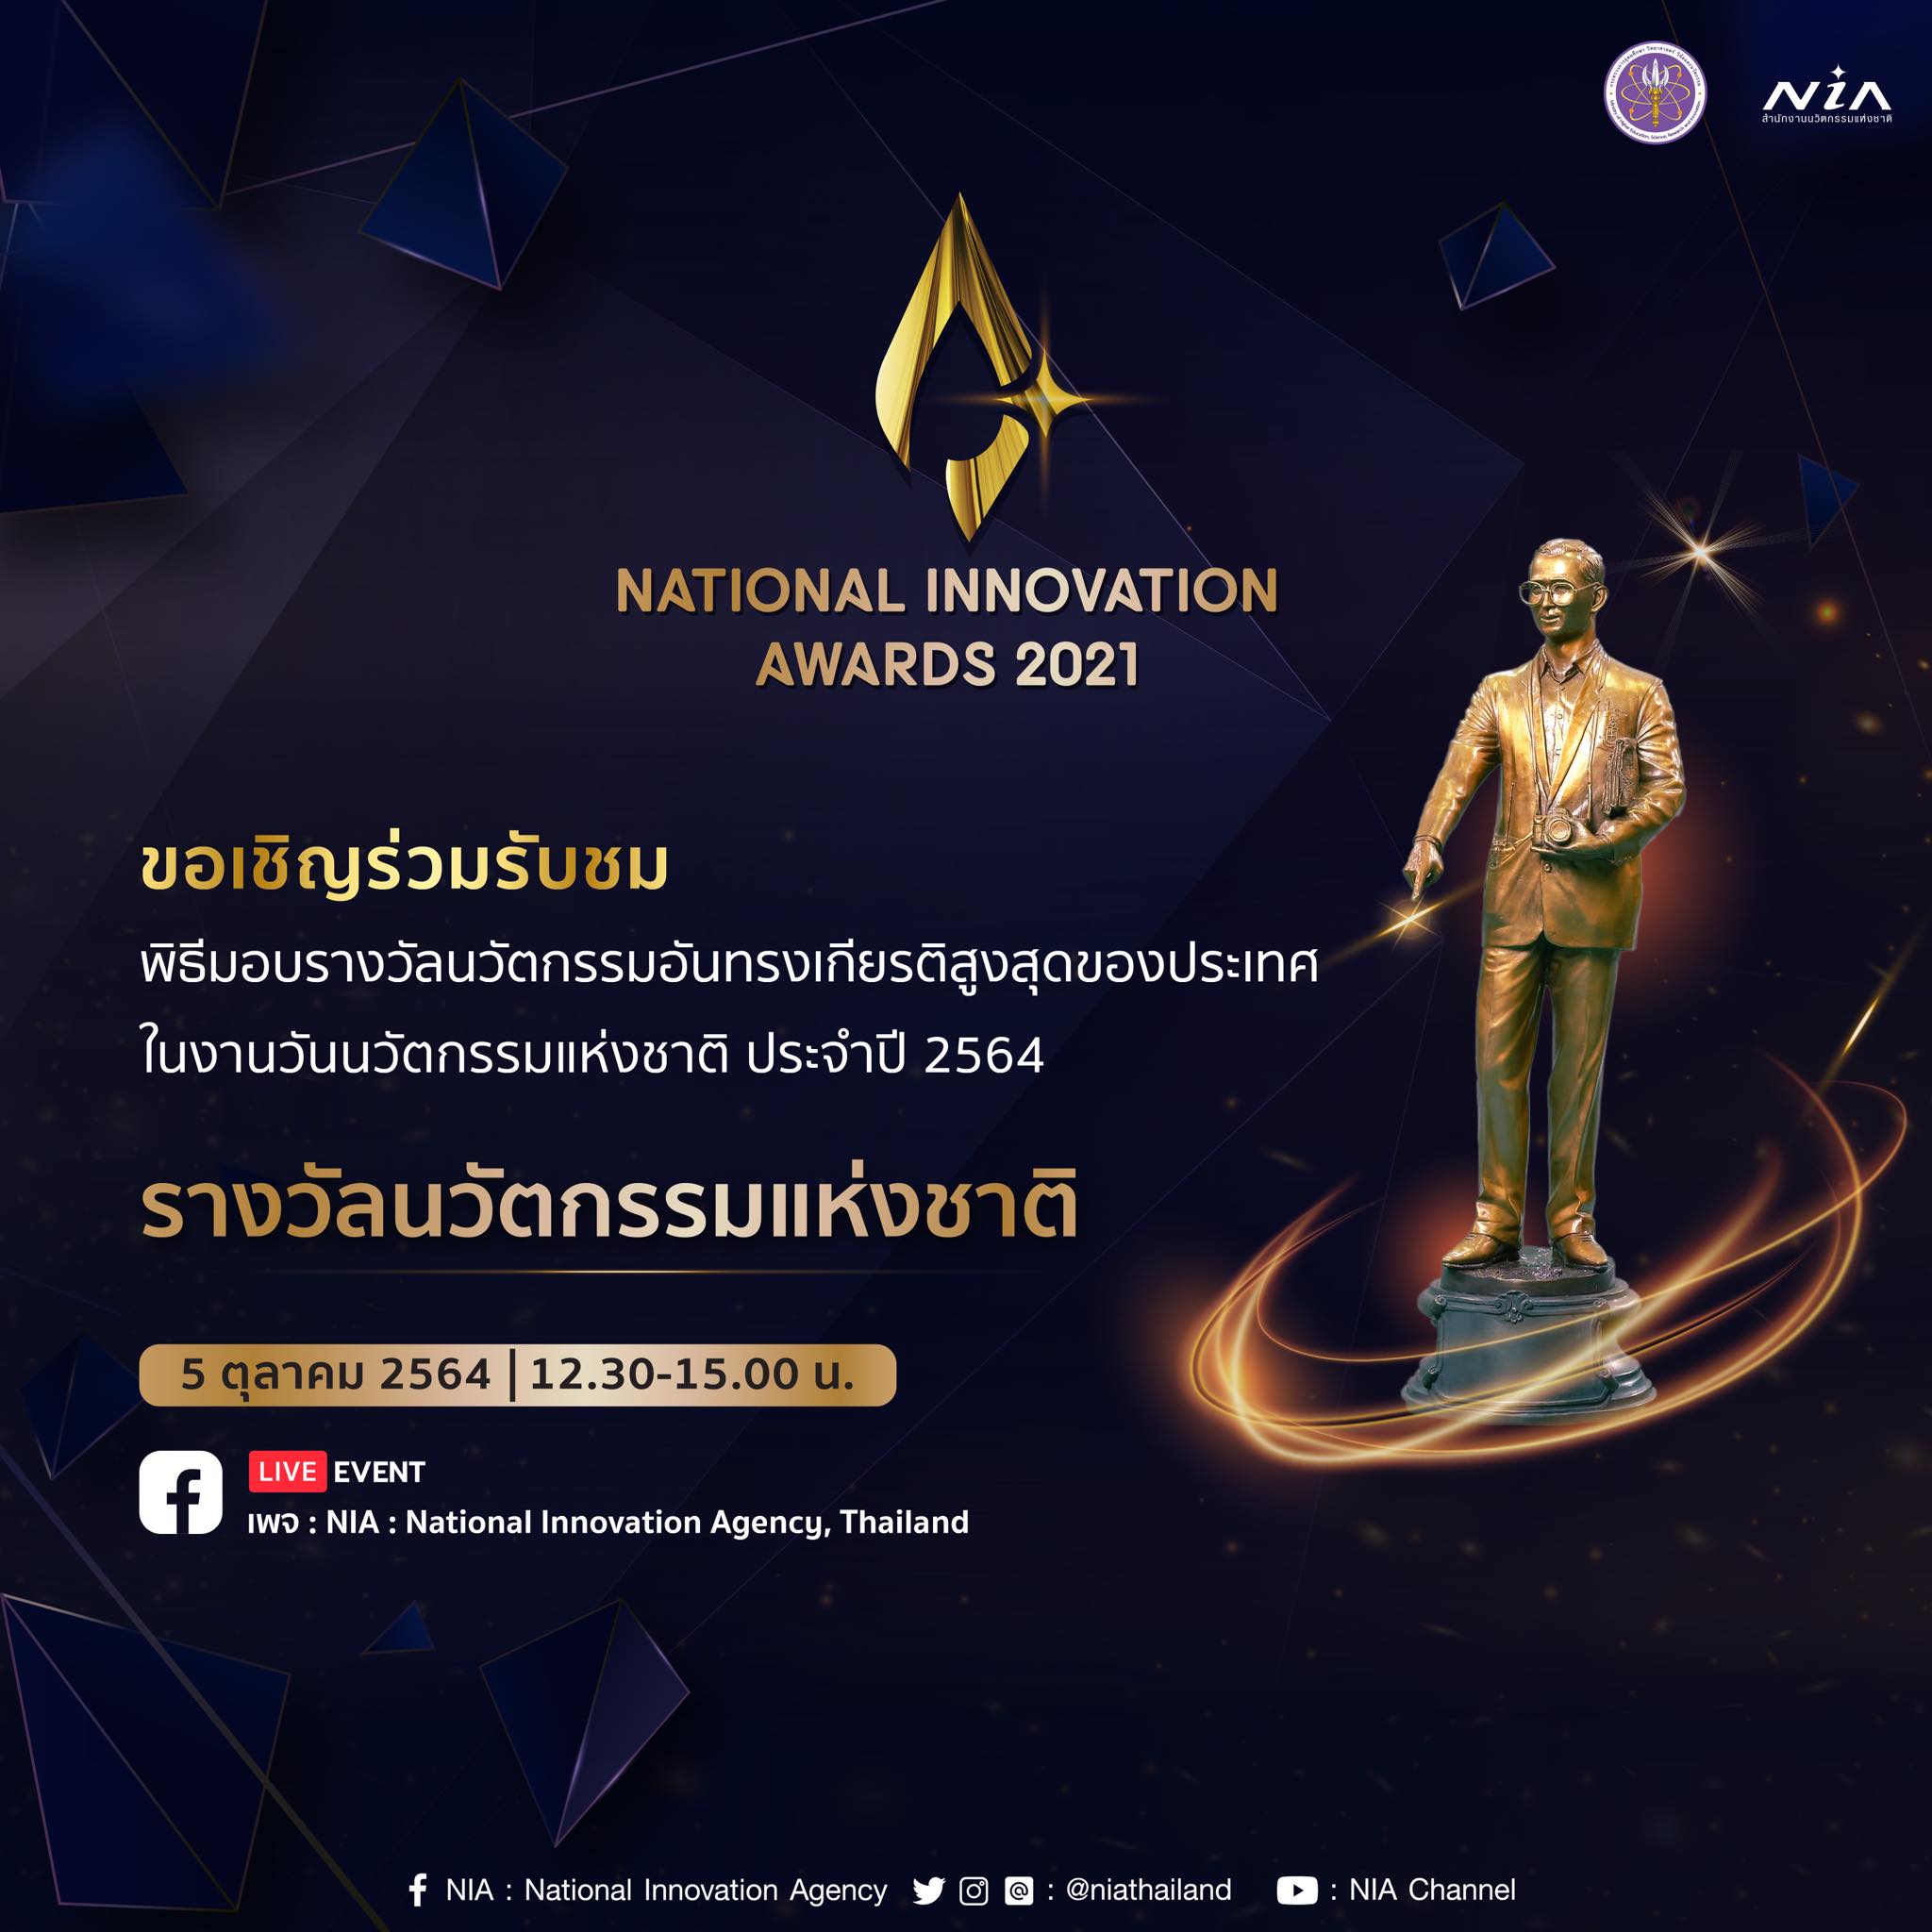 เชิญร่วมรับชมพิธีมอบรางวัลนวัตกรรมแห่งชาติ ประจำปี 2564 (NATIONAL INNOVATION AWARDS 2021)